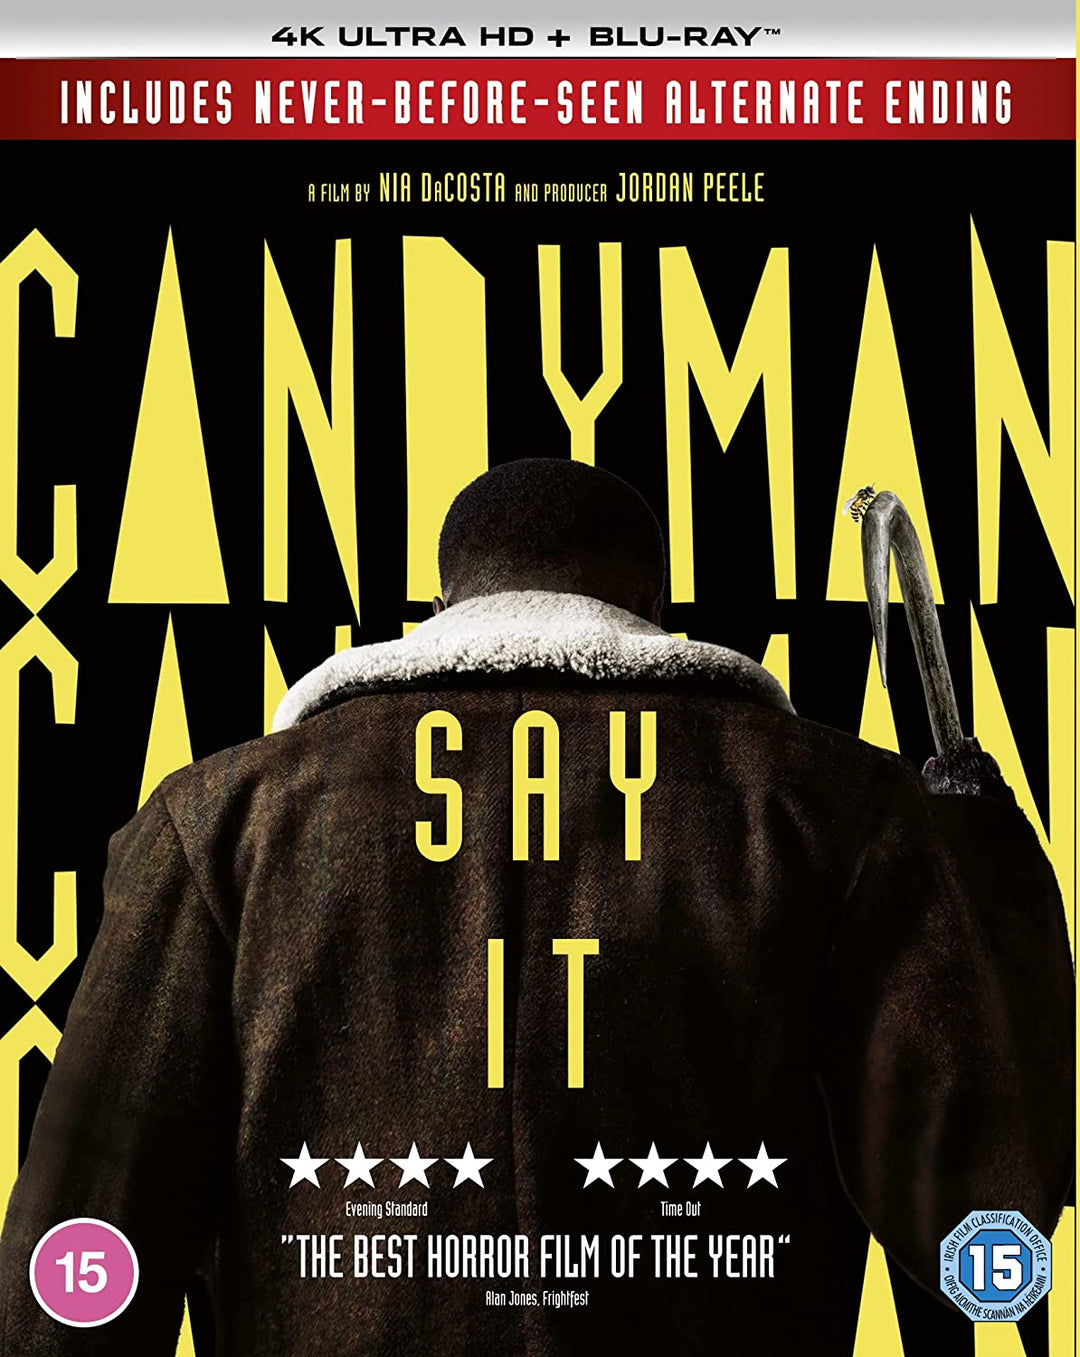 Candyman [4K UHD] [2021] [Blu-ray] [Region Free] - Horror/Thriller [Blu-ray]